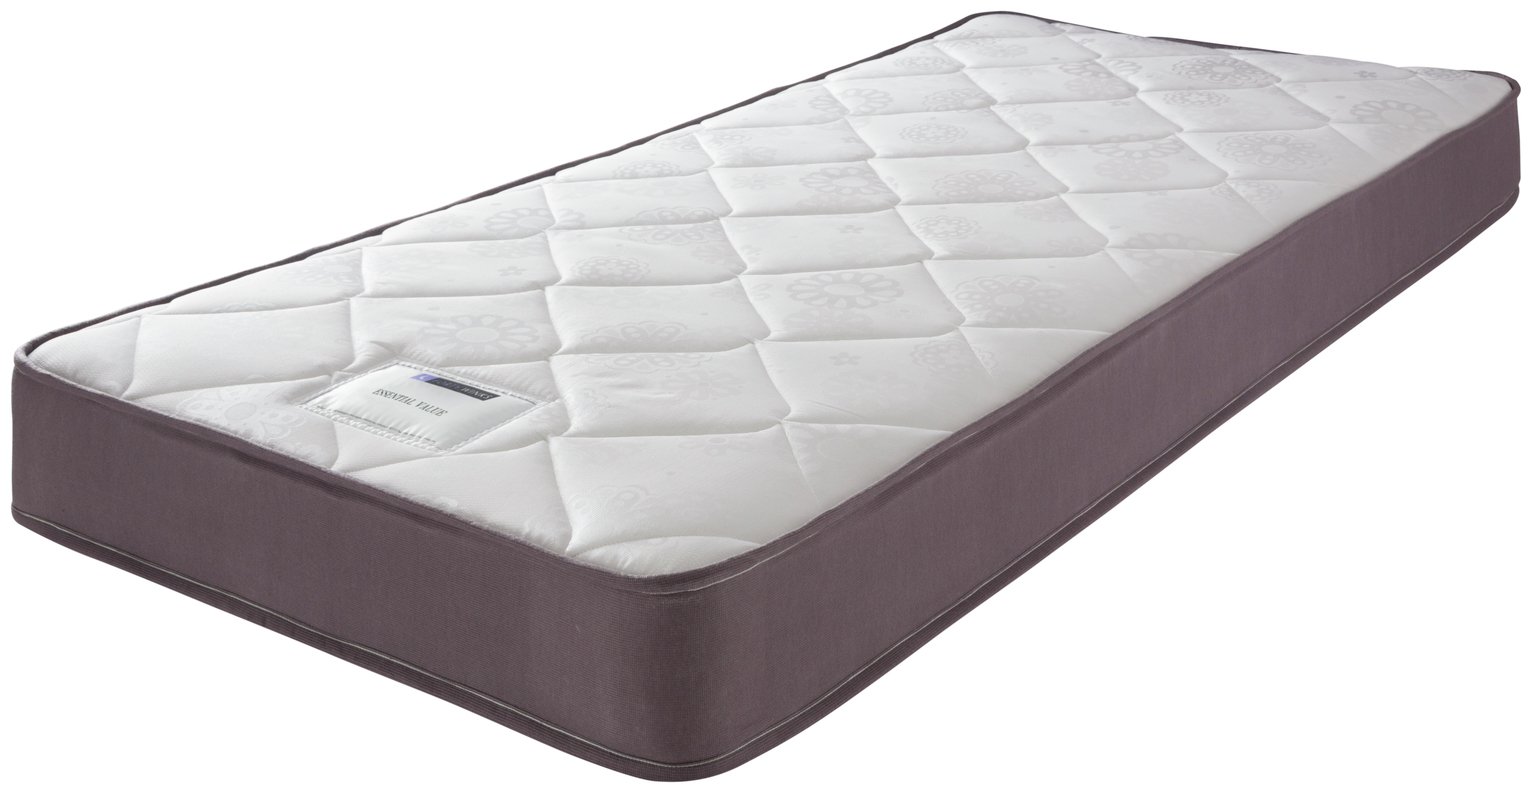 forty winks pillow top mattress